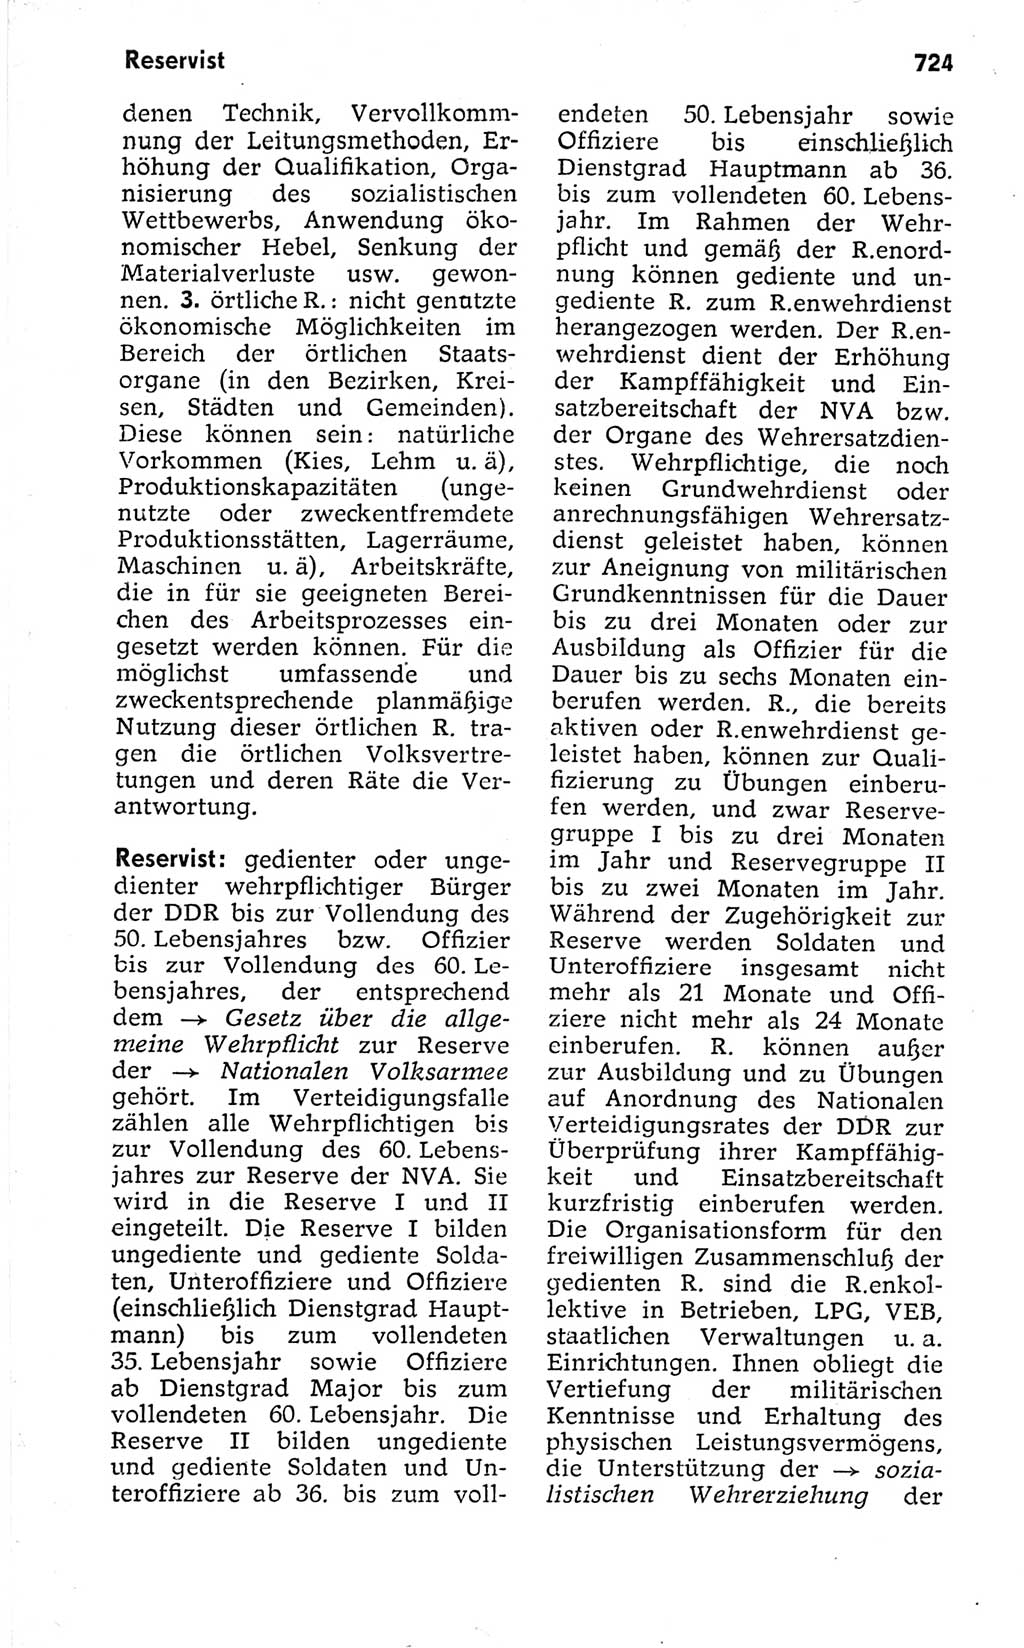 Kleines politisches Wörterbuch [Deutsche Demokratische Republik (DDR)] 1973, Seite 724 (Kl. pol. Wb. DDR 1973, S. 724)